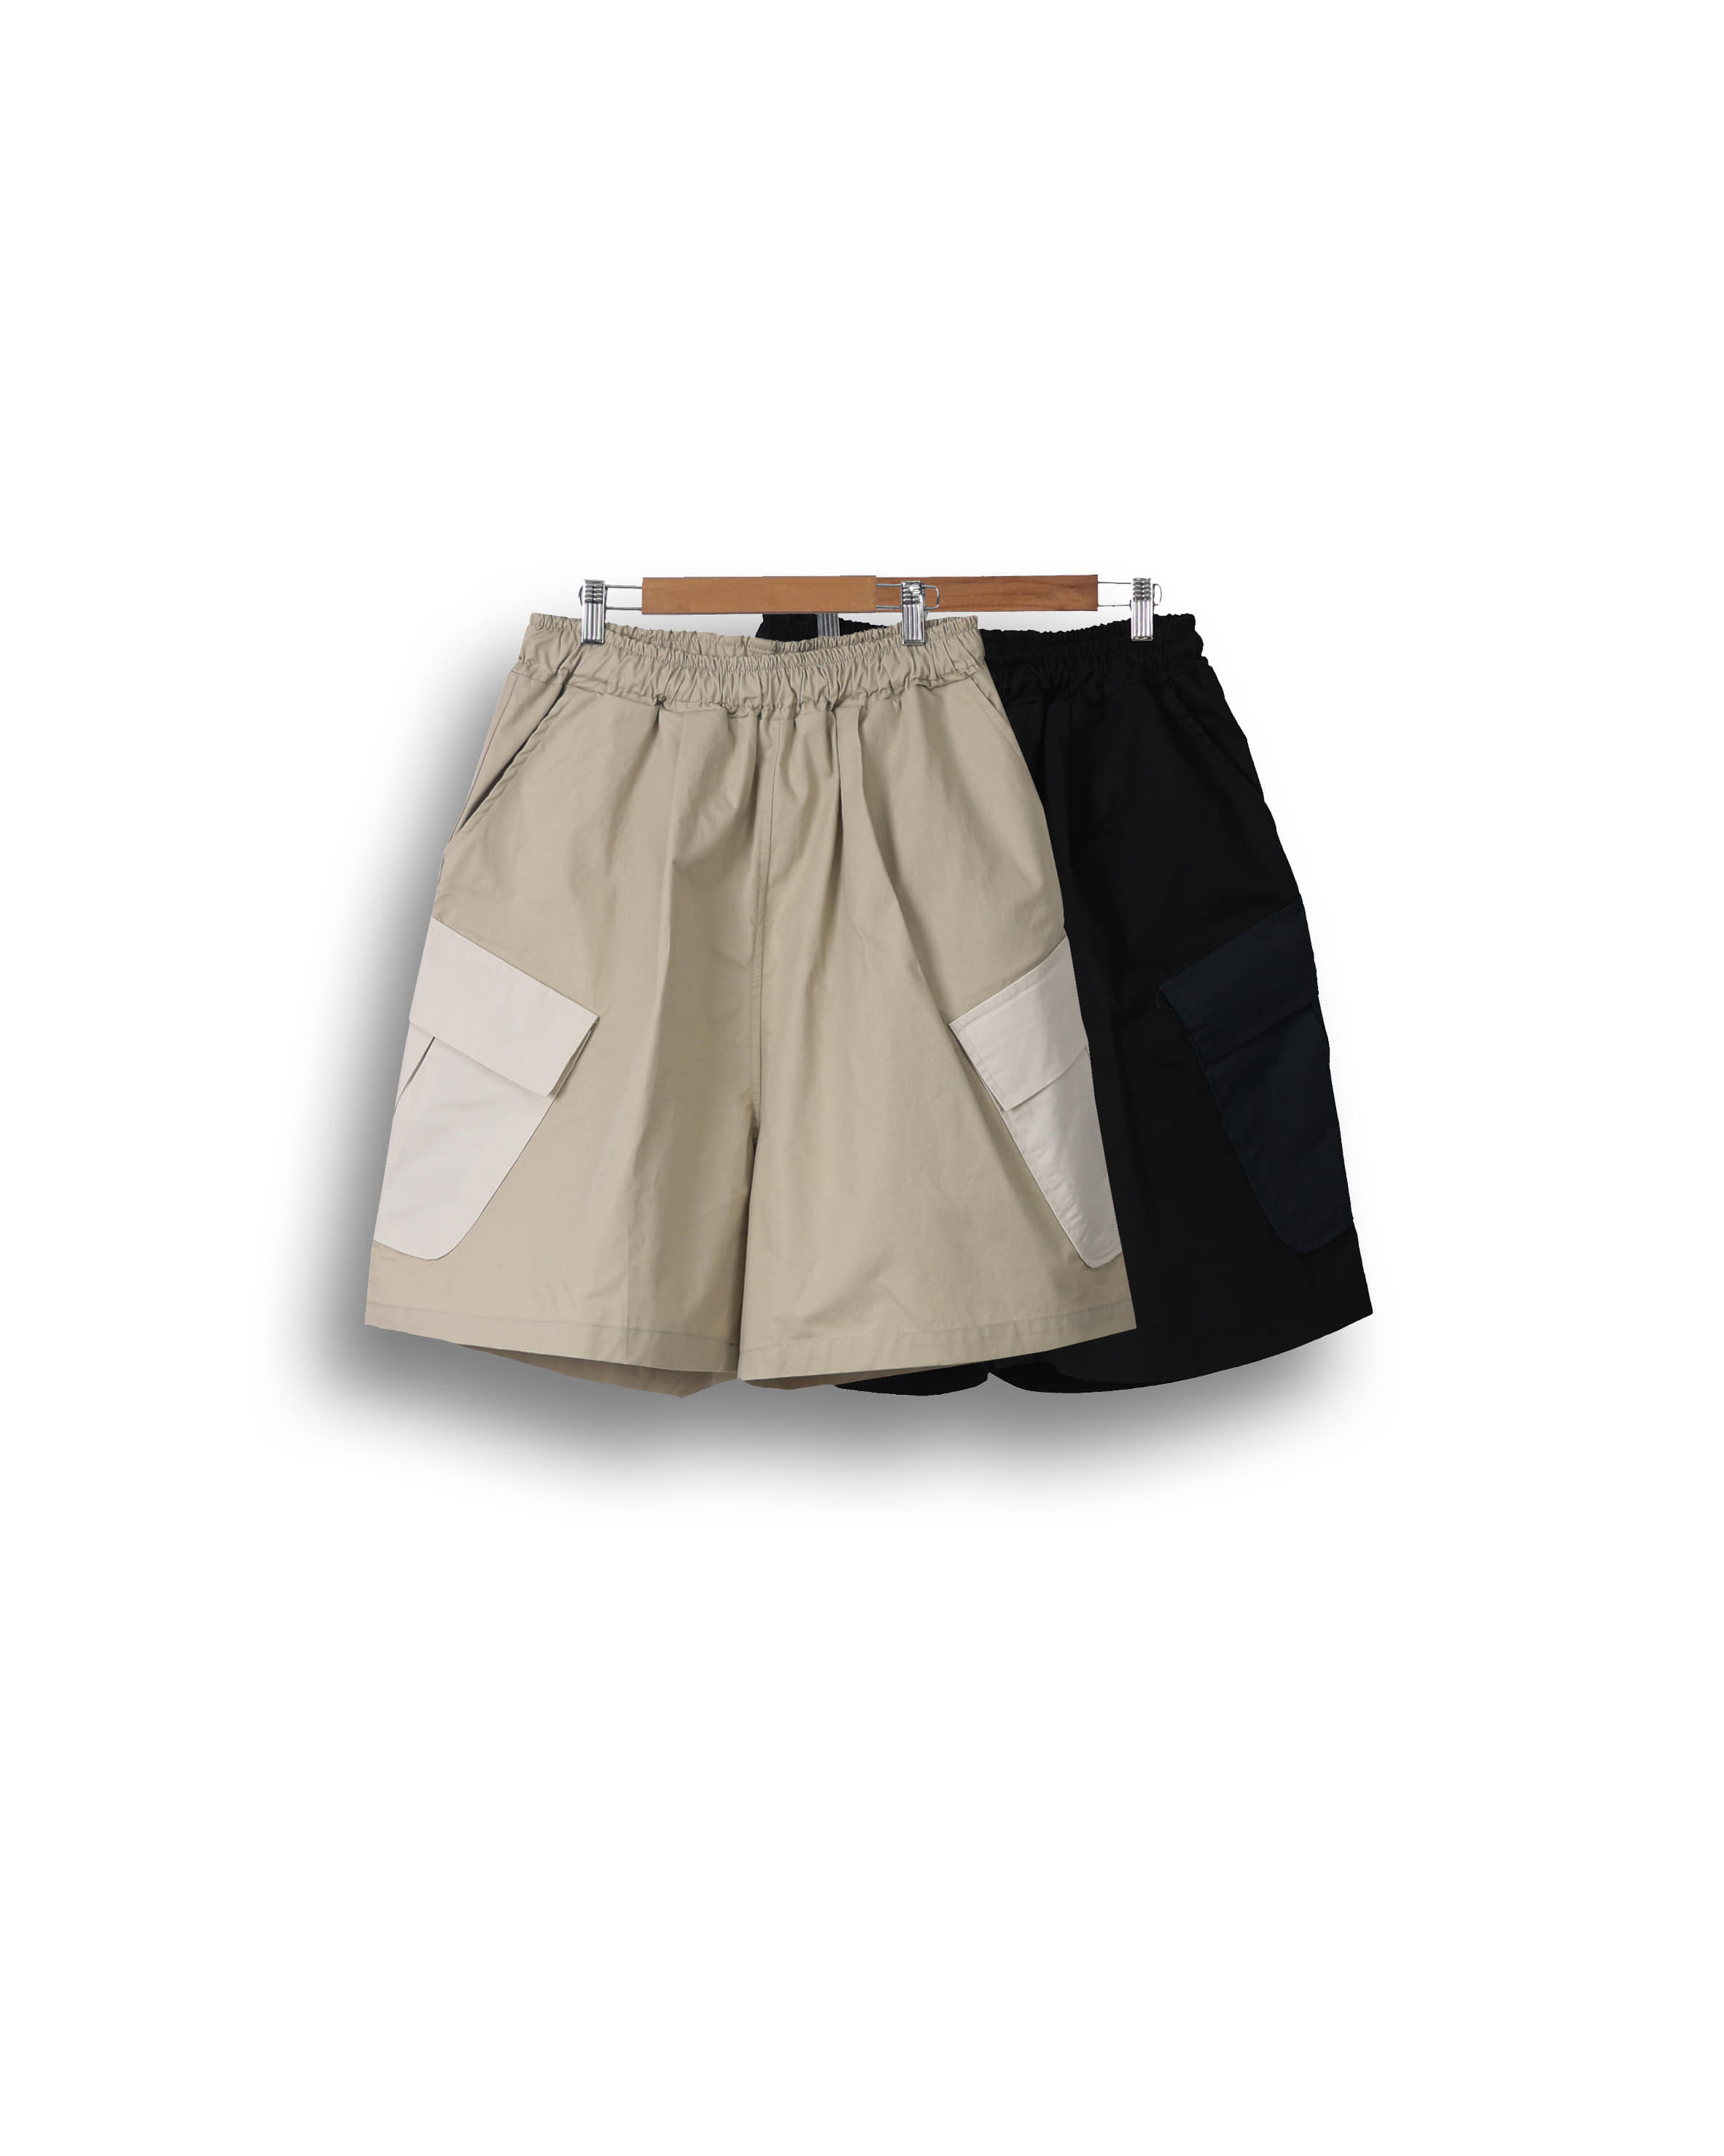 SOME Grade Pocket Cargo Half Pants (Black/Beige)